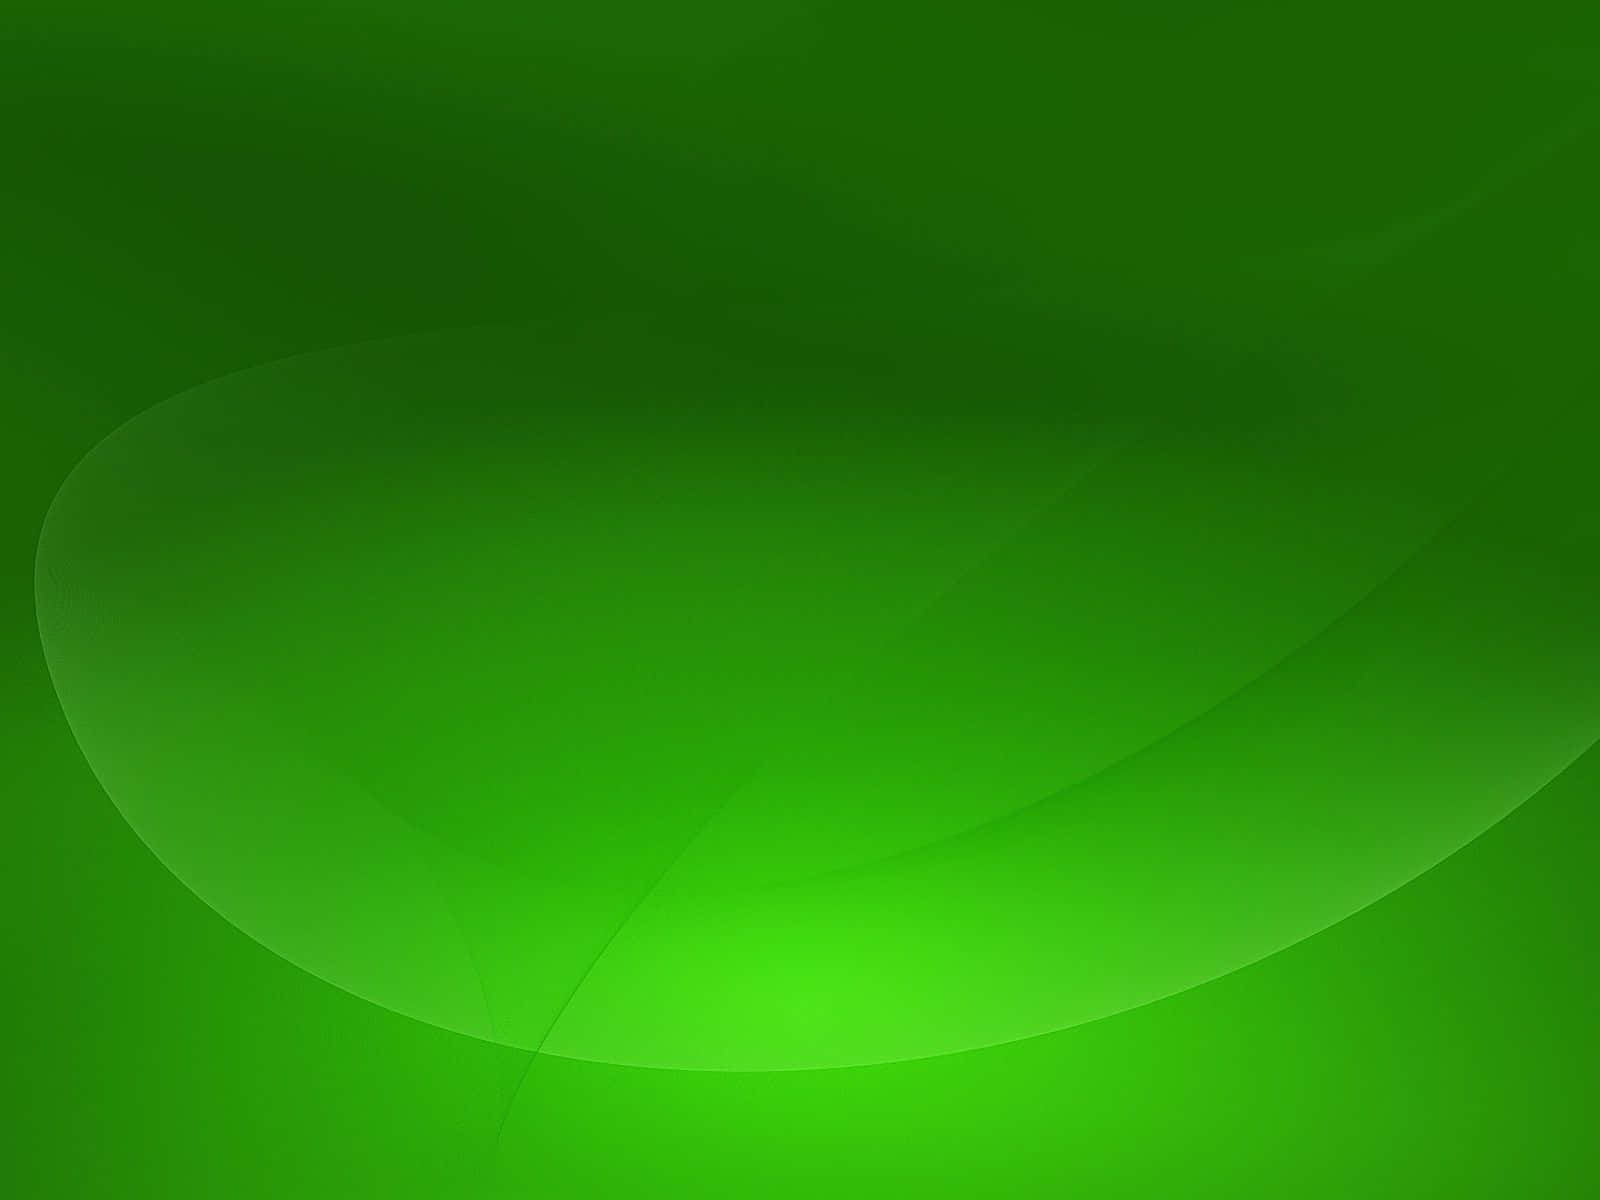 Verdesólido - Um Fundo Limpo E Minimalista